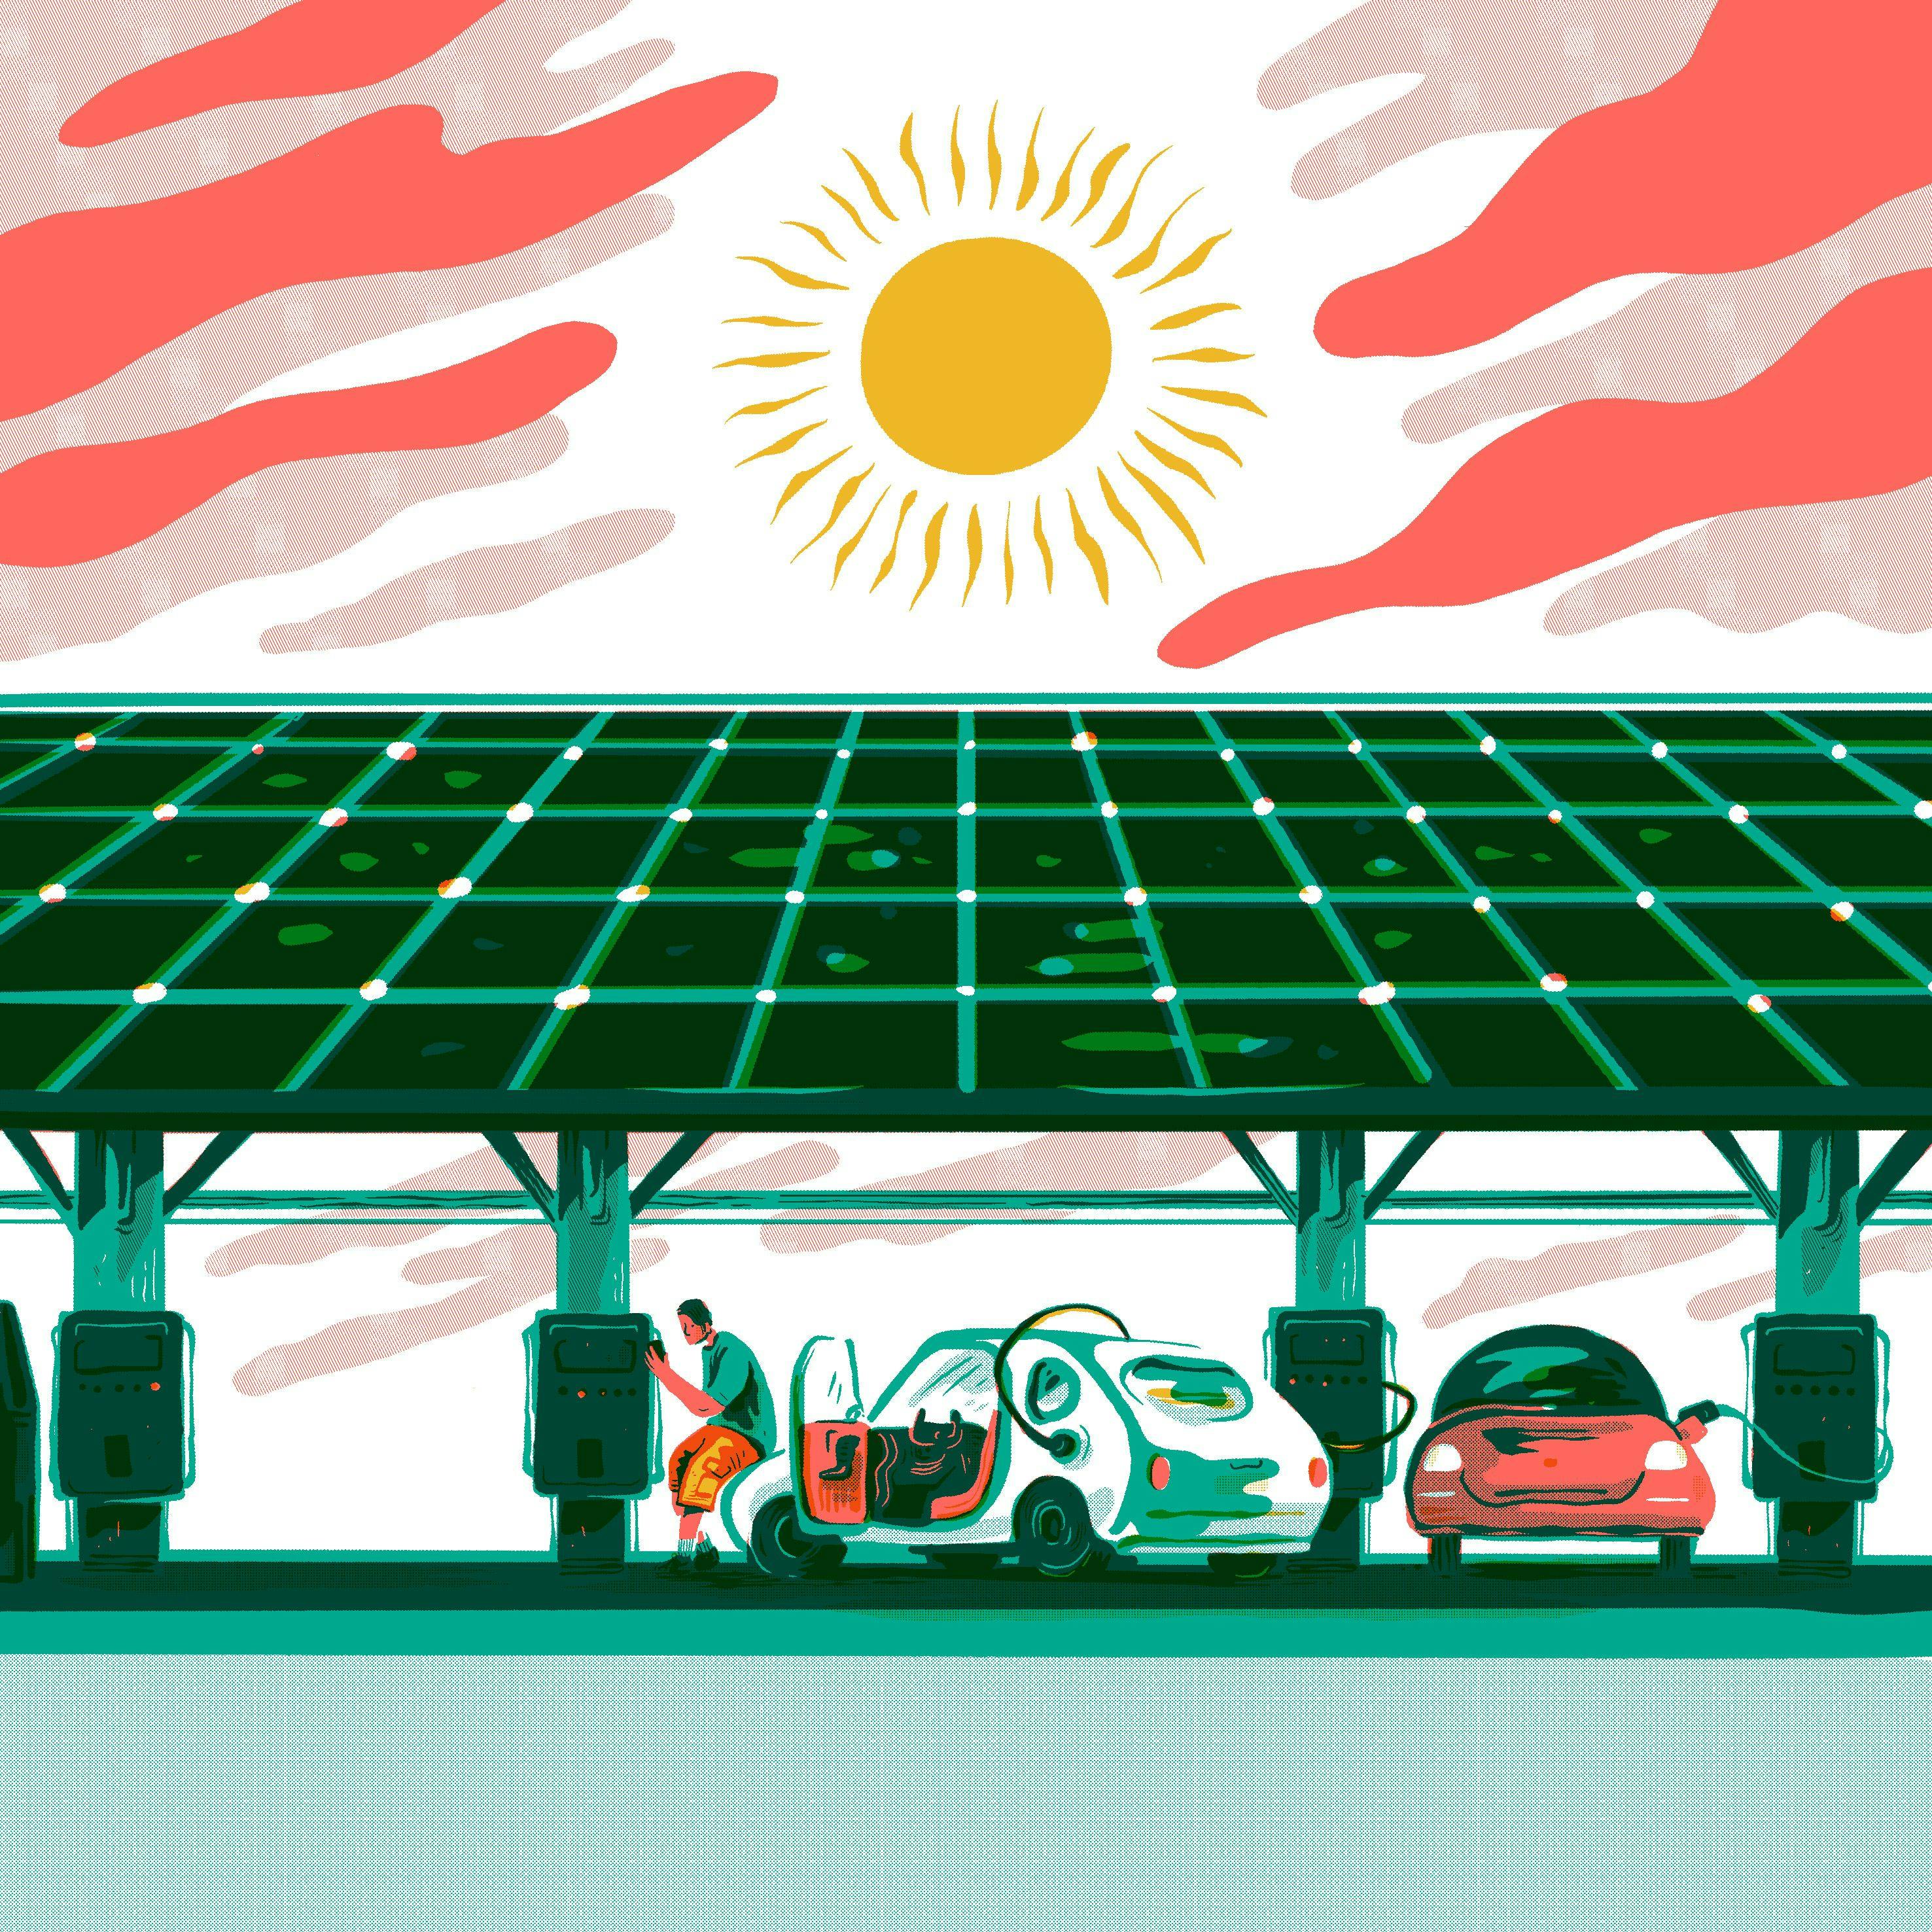 Solární carporty podporuje legislativa ve Francii i v Německu